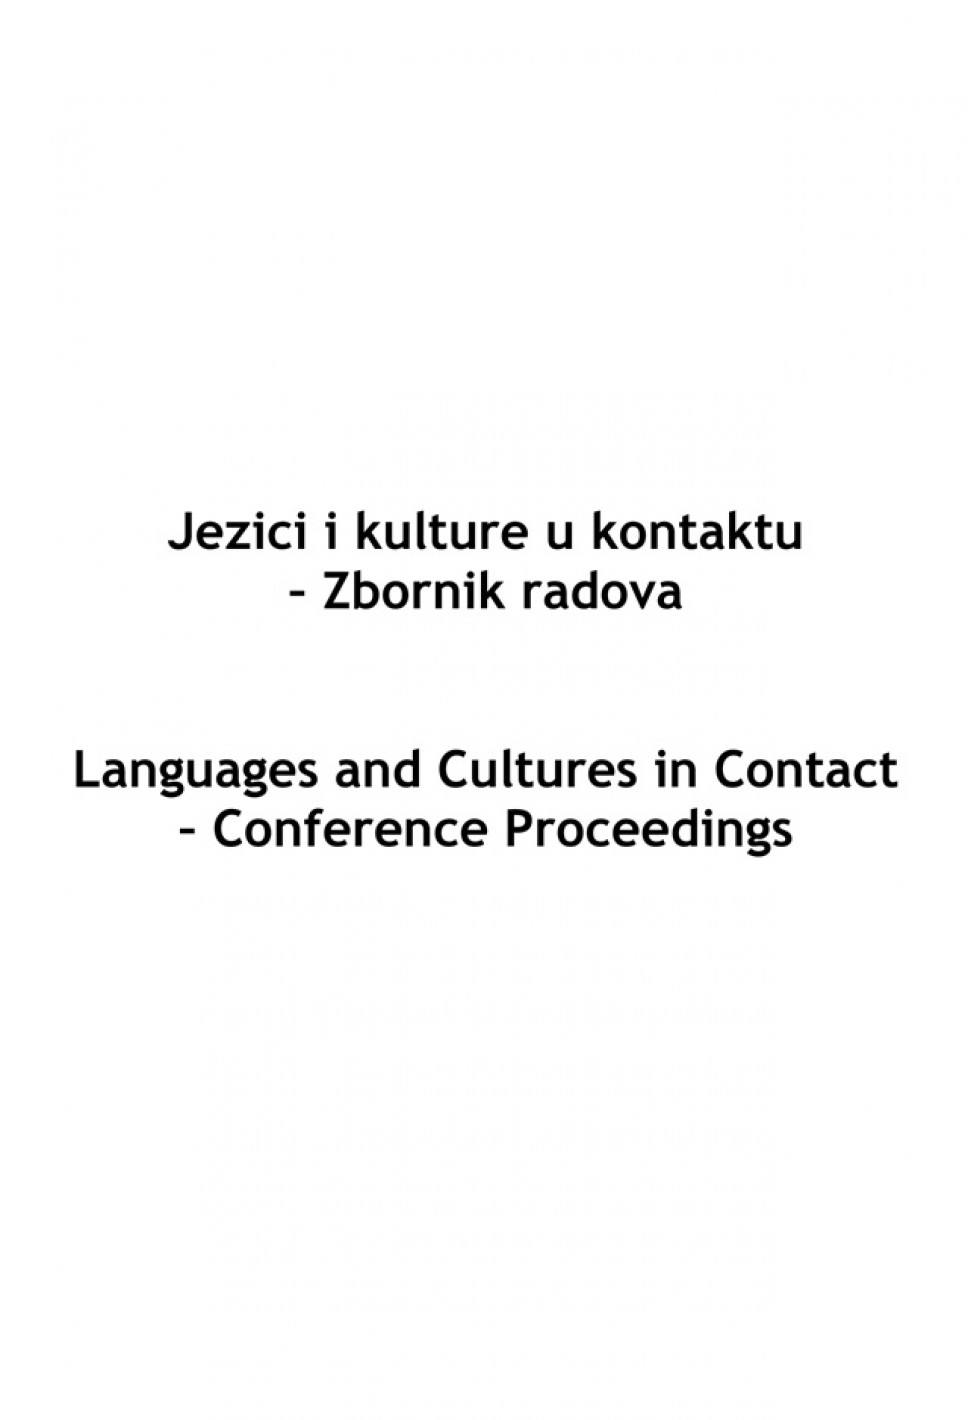 Jezici i kulture u kontaktu - Zbornik radova